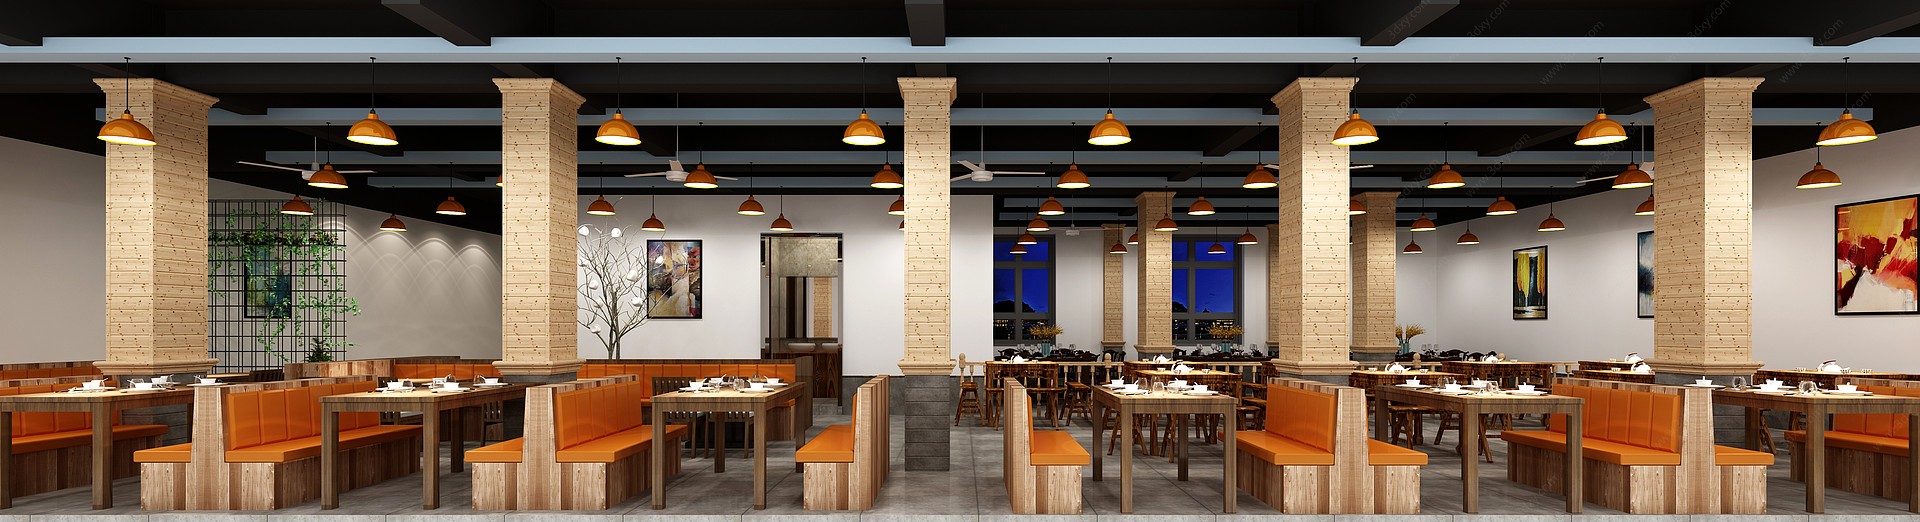 新中式酒楼大堂餐厅3D模型